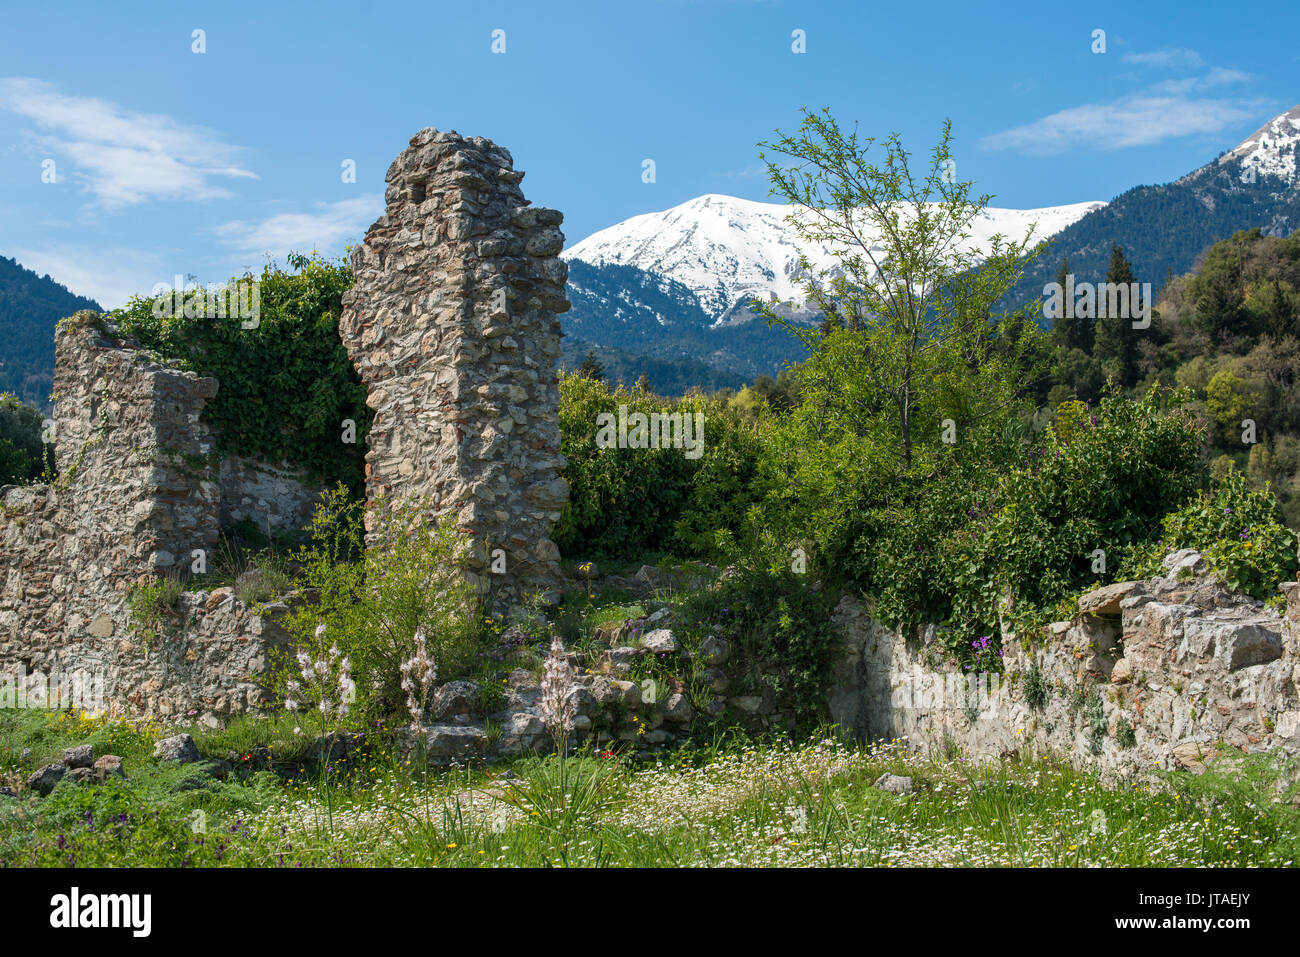 Le antiche rovine di Mystras, UNESCO, e le montagne innevate Taygetos in lontananza, Peloponneso, Grecia, Europa Foto Stock